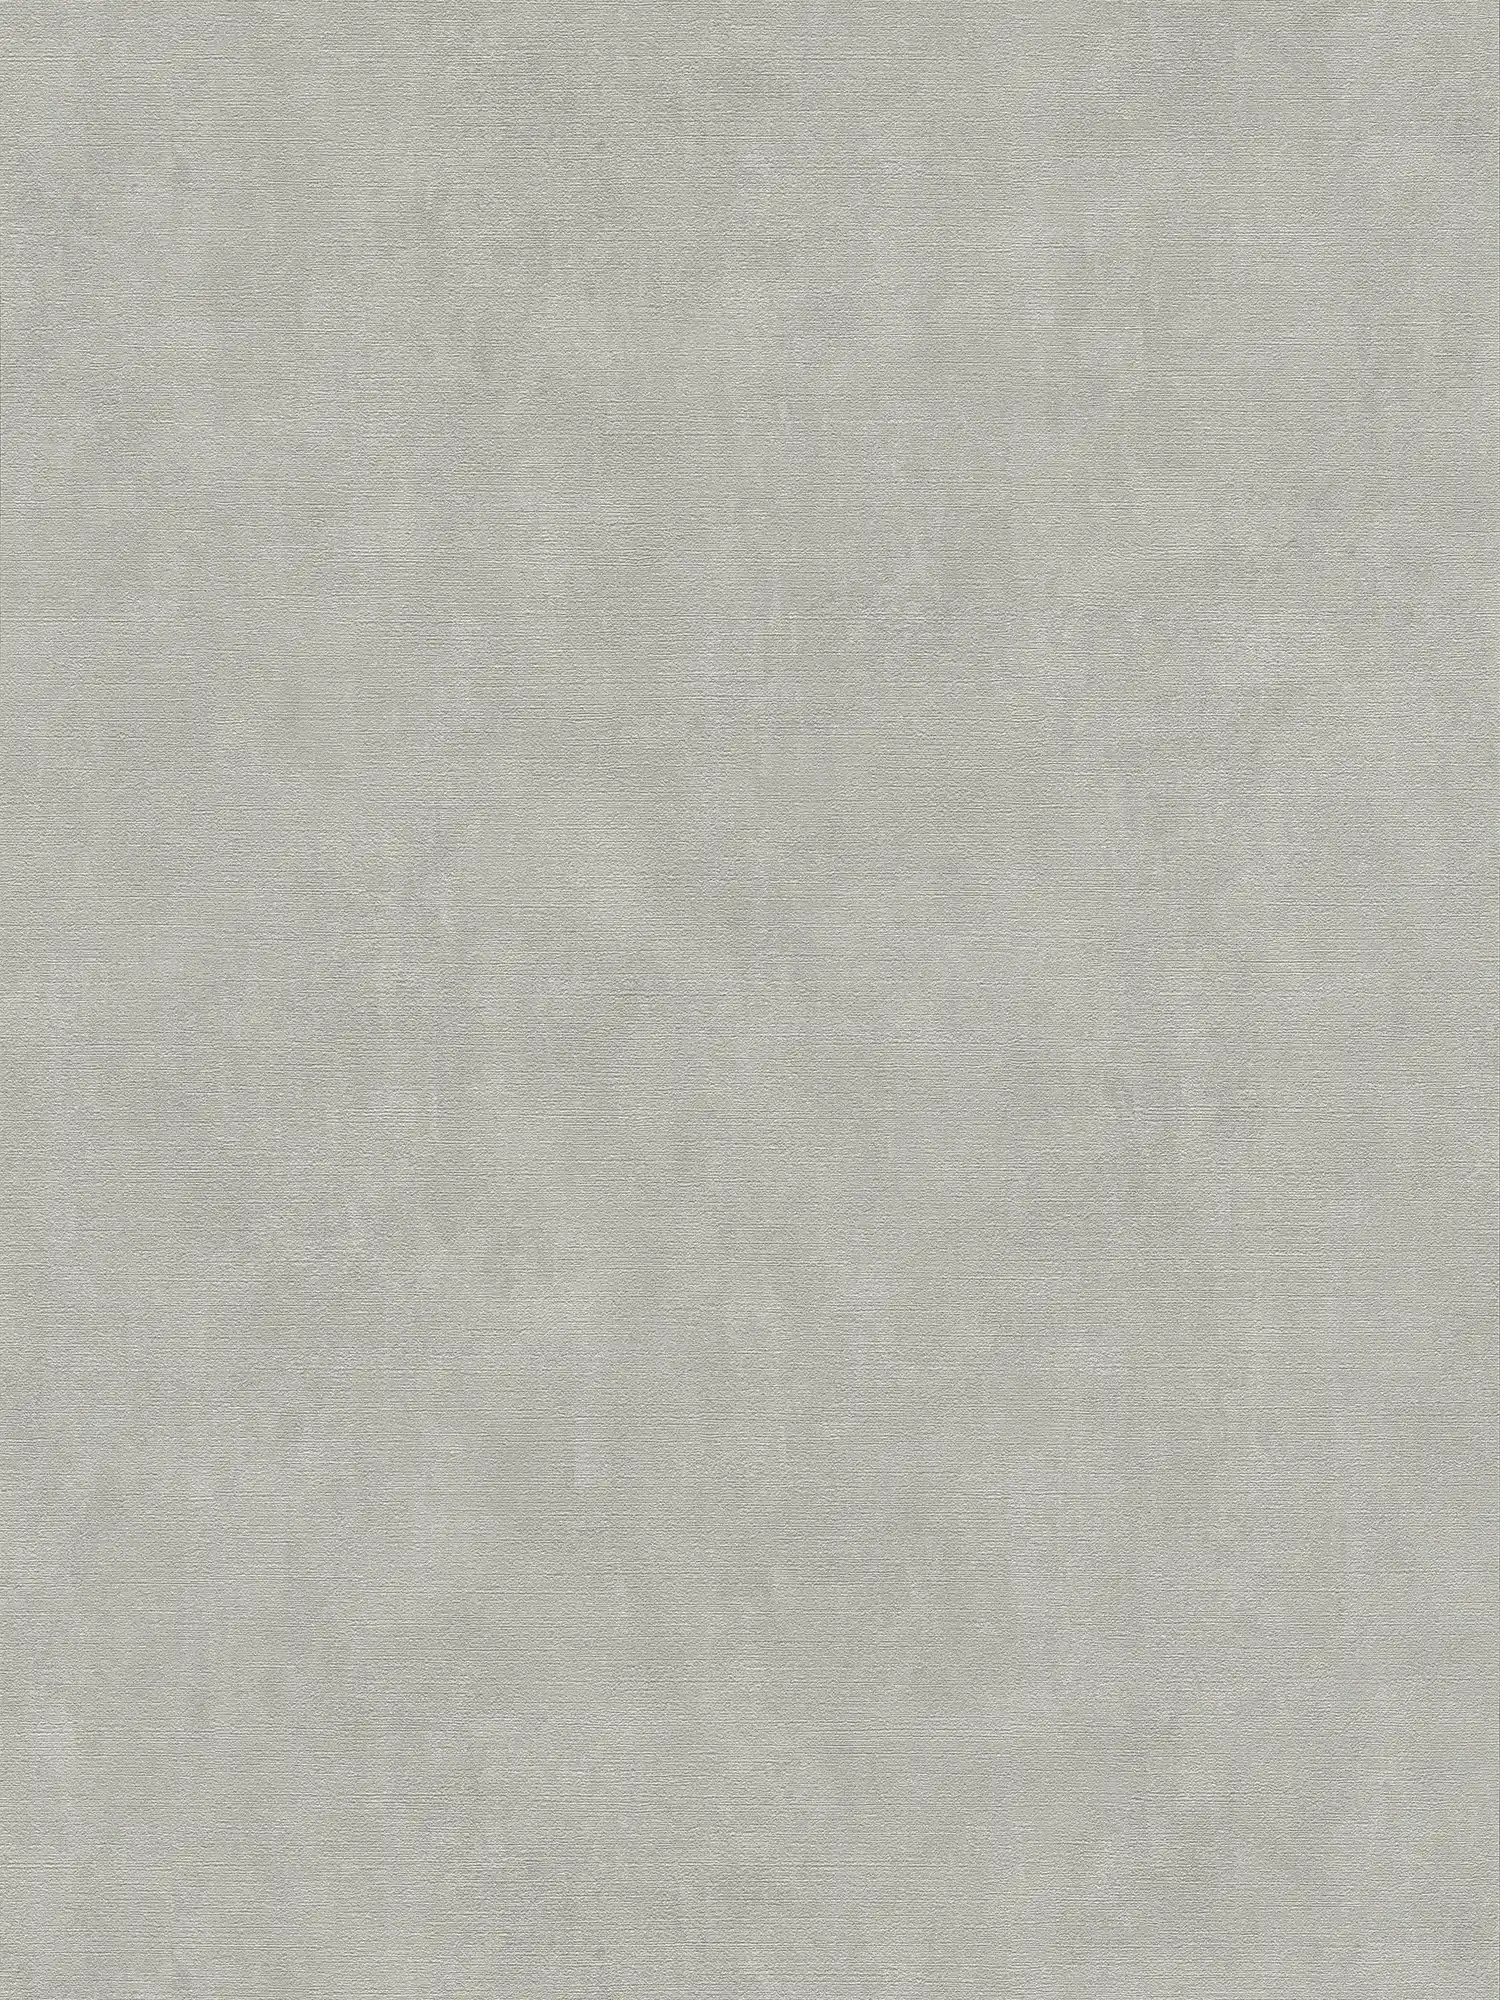 Papel pintado beige gris con aspecto de yeso en estilo vintage
